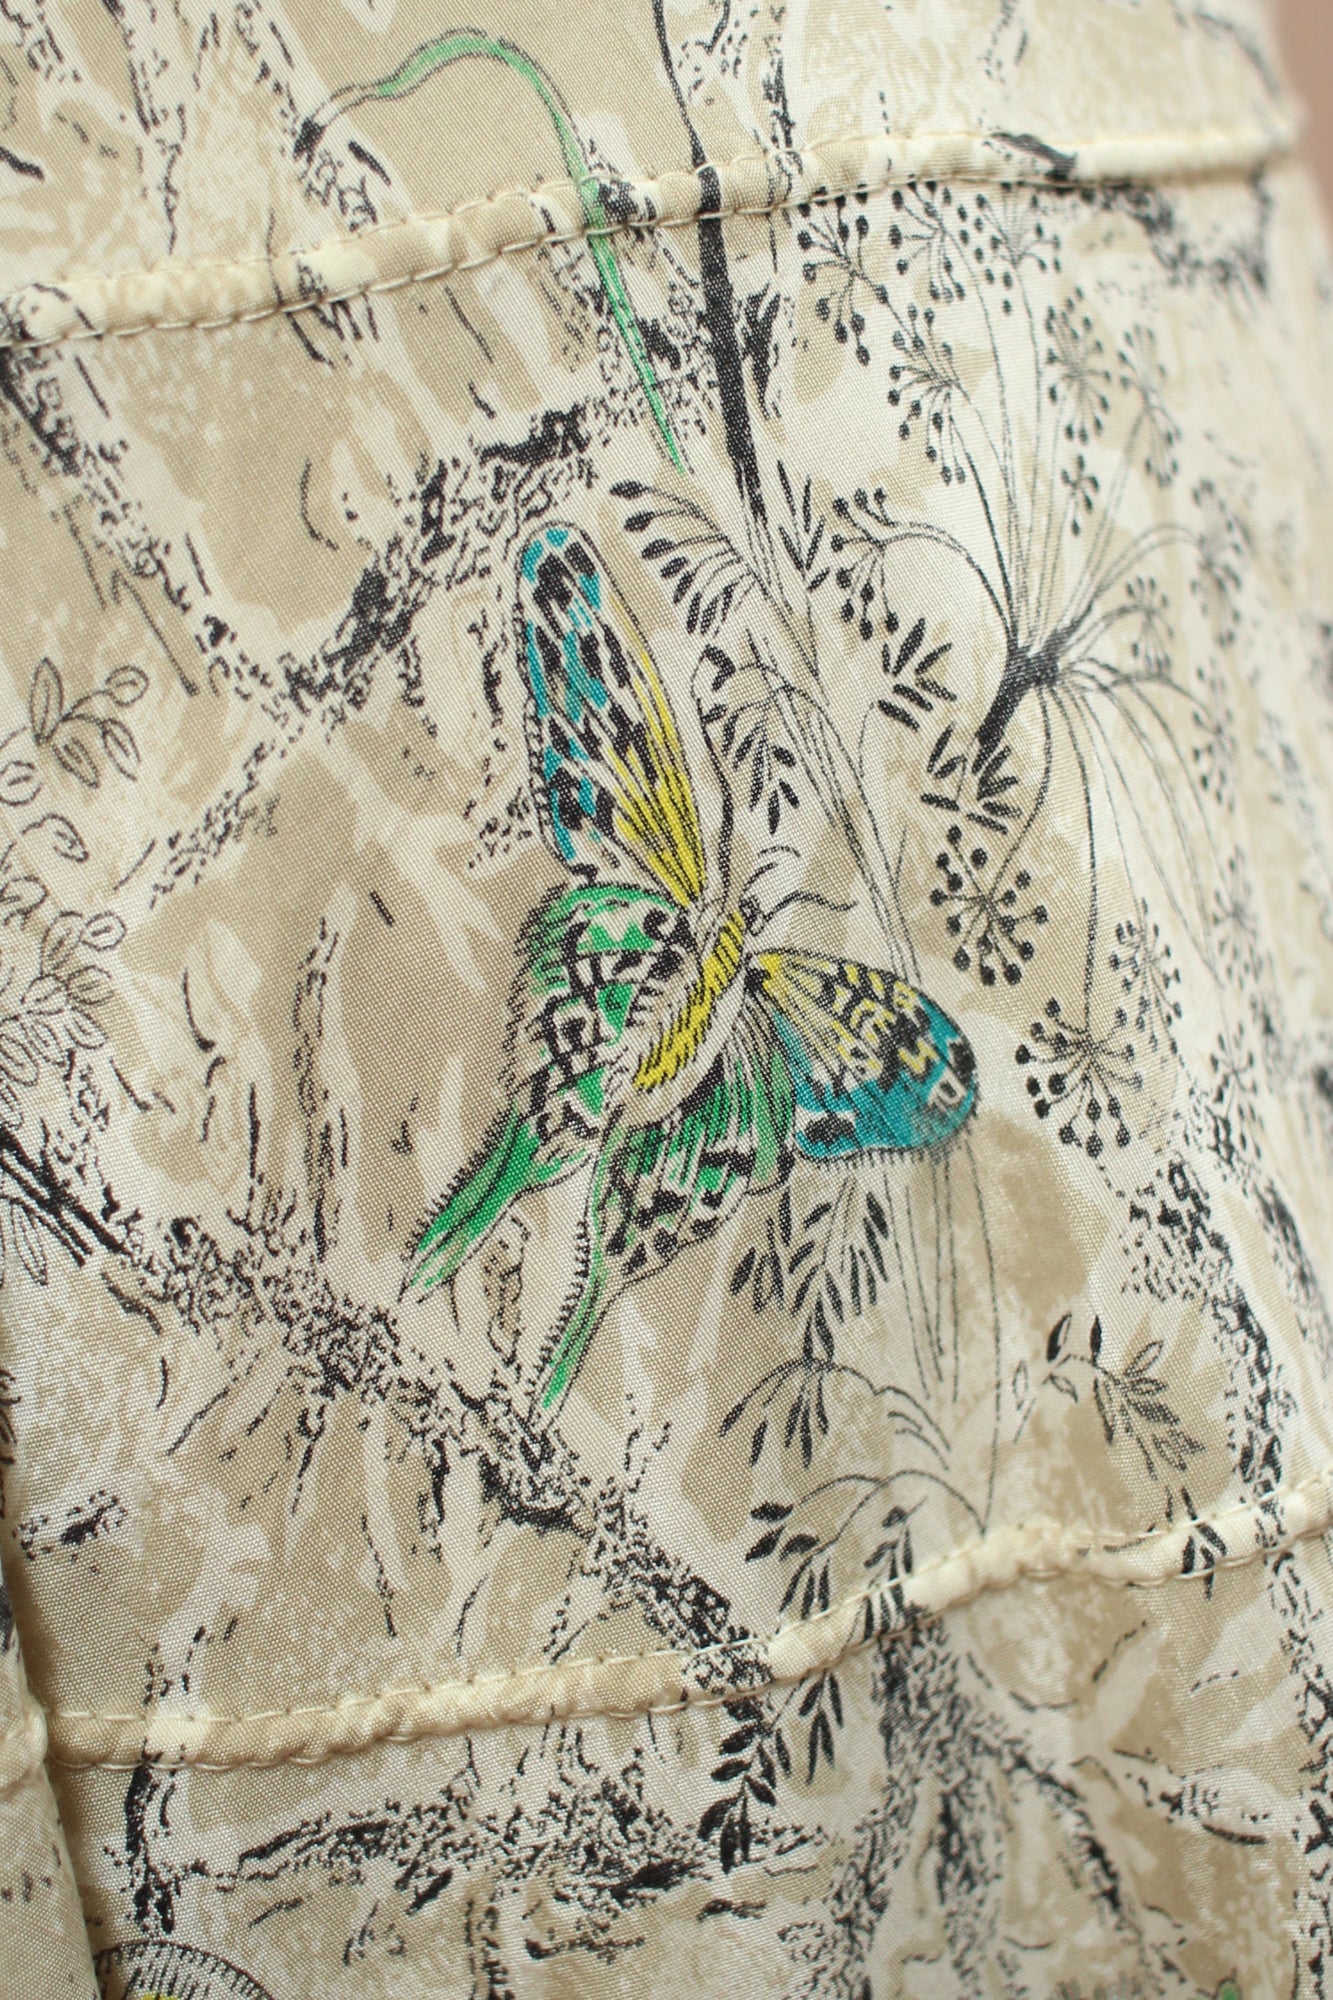 1940s Butterfly Print Summer Dress